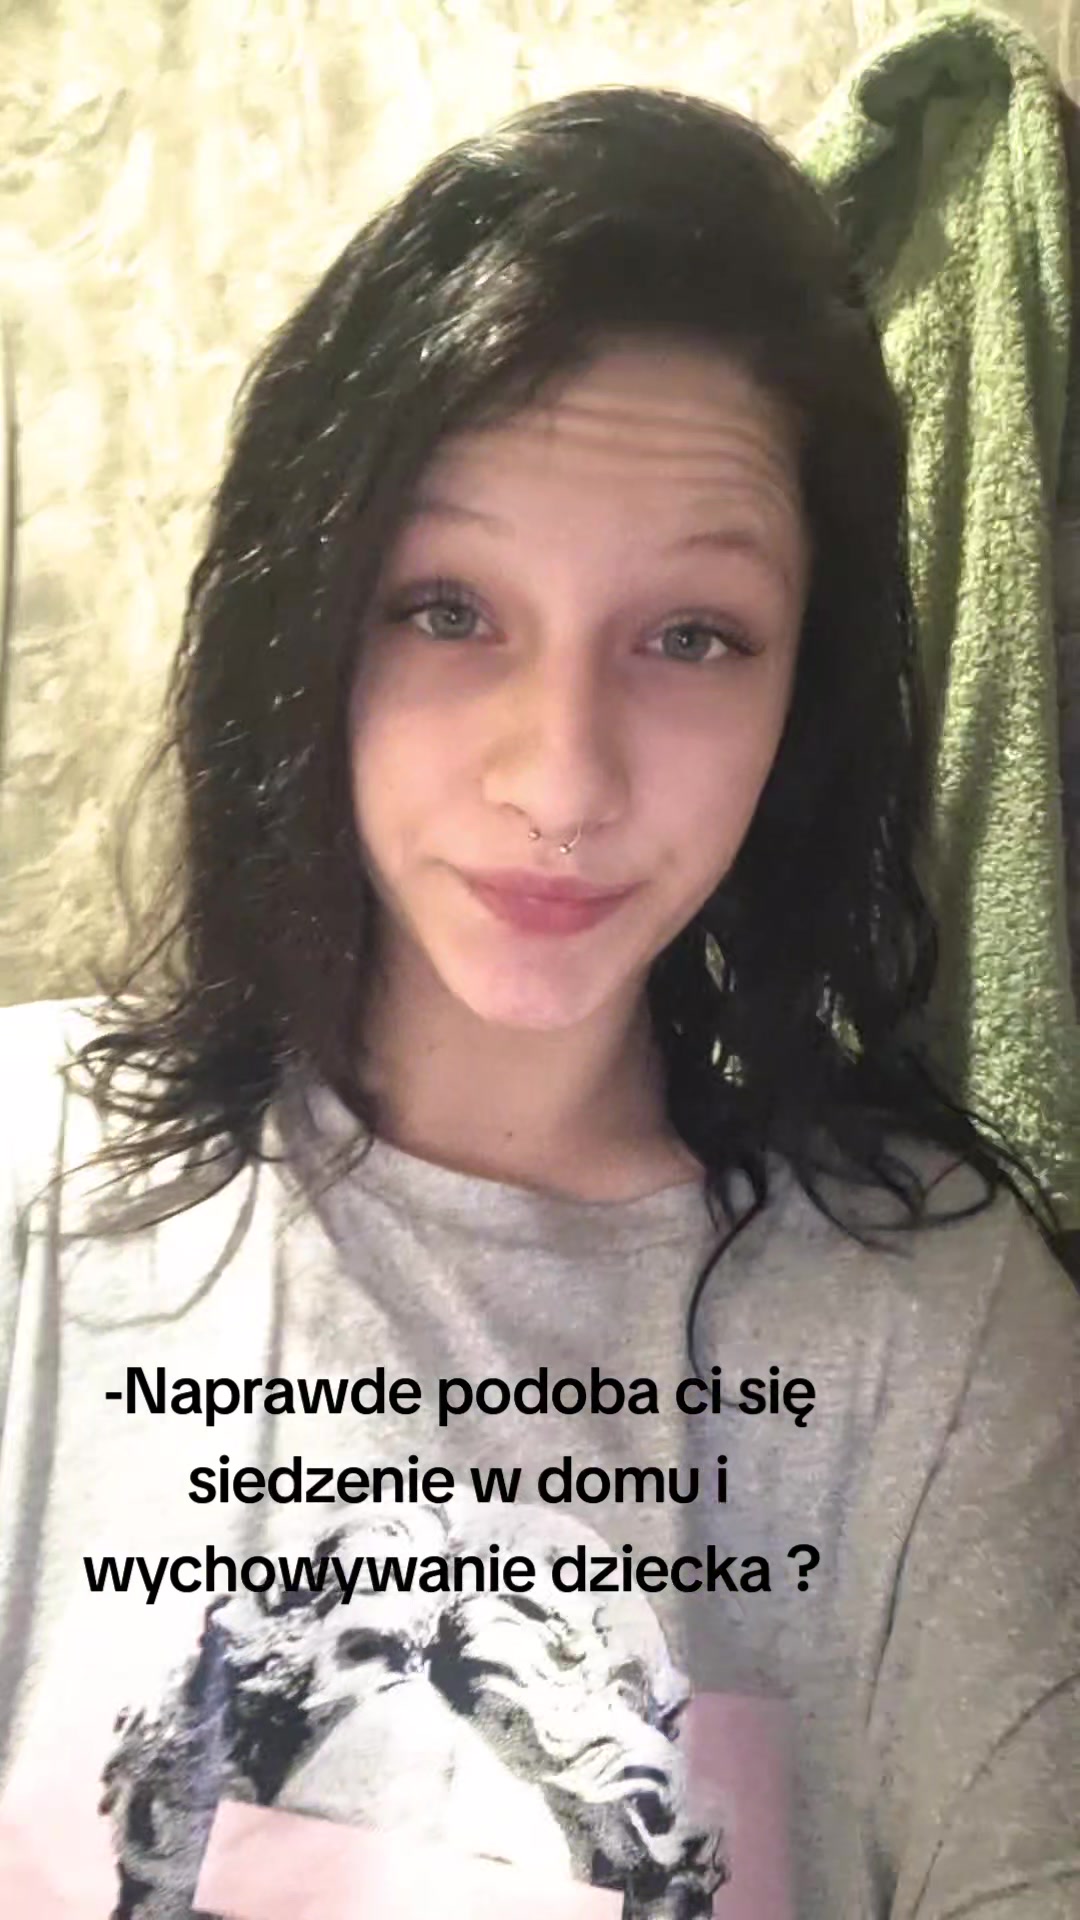 @Martyna Iwańska